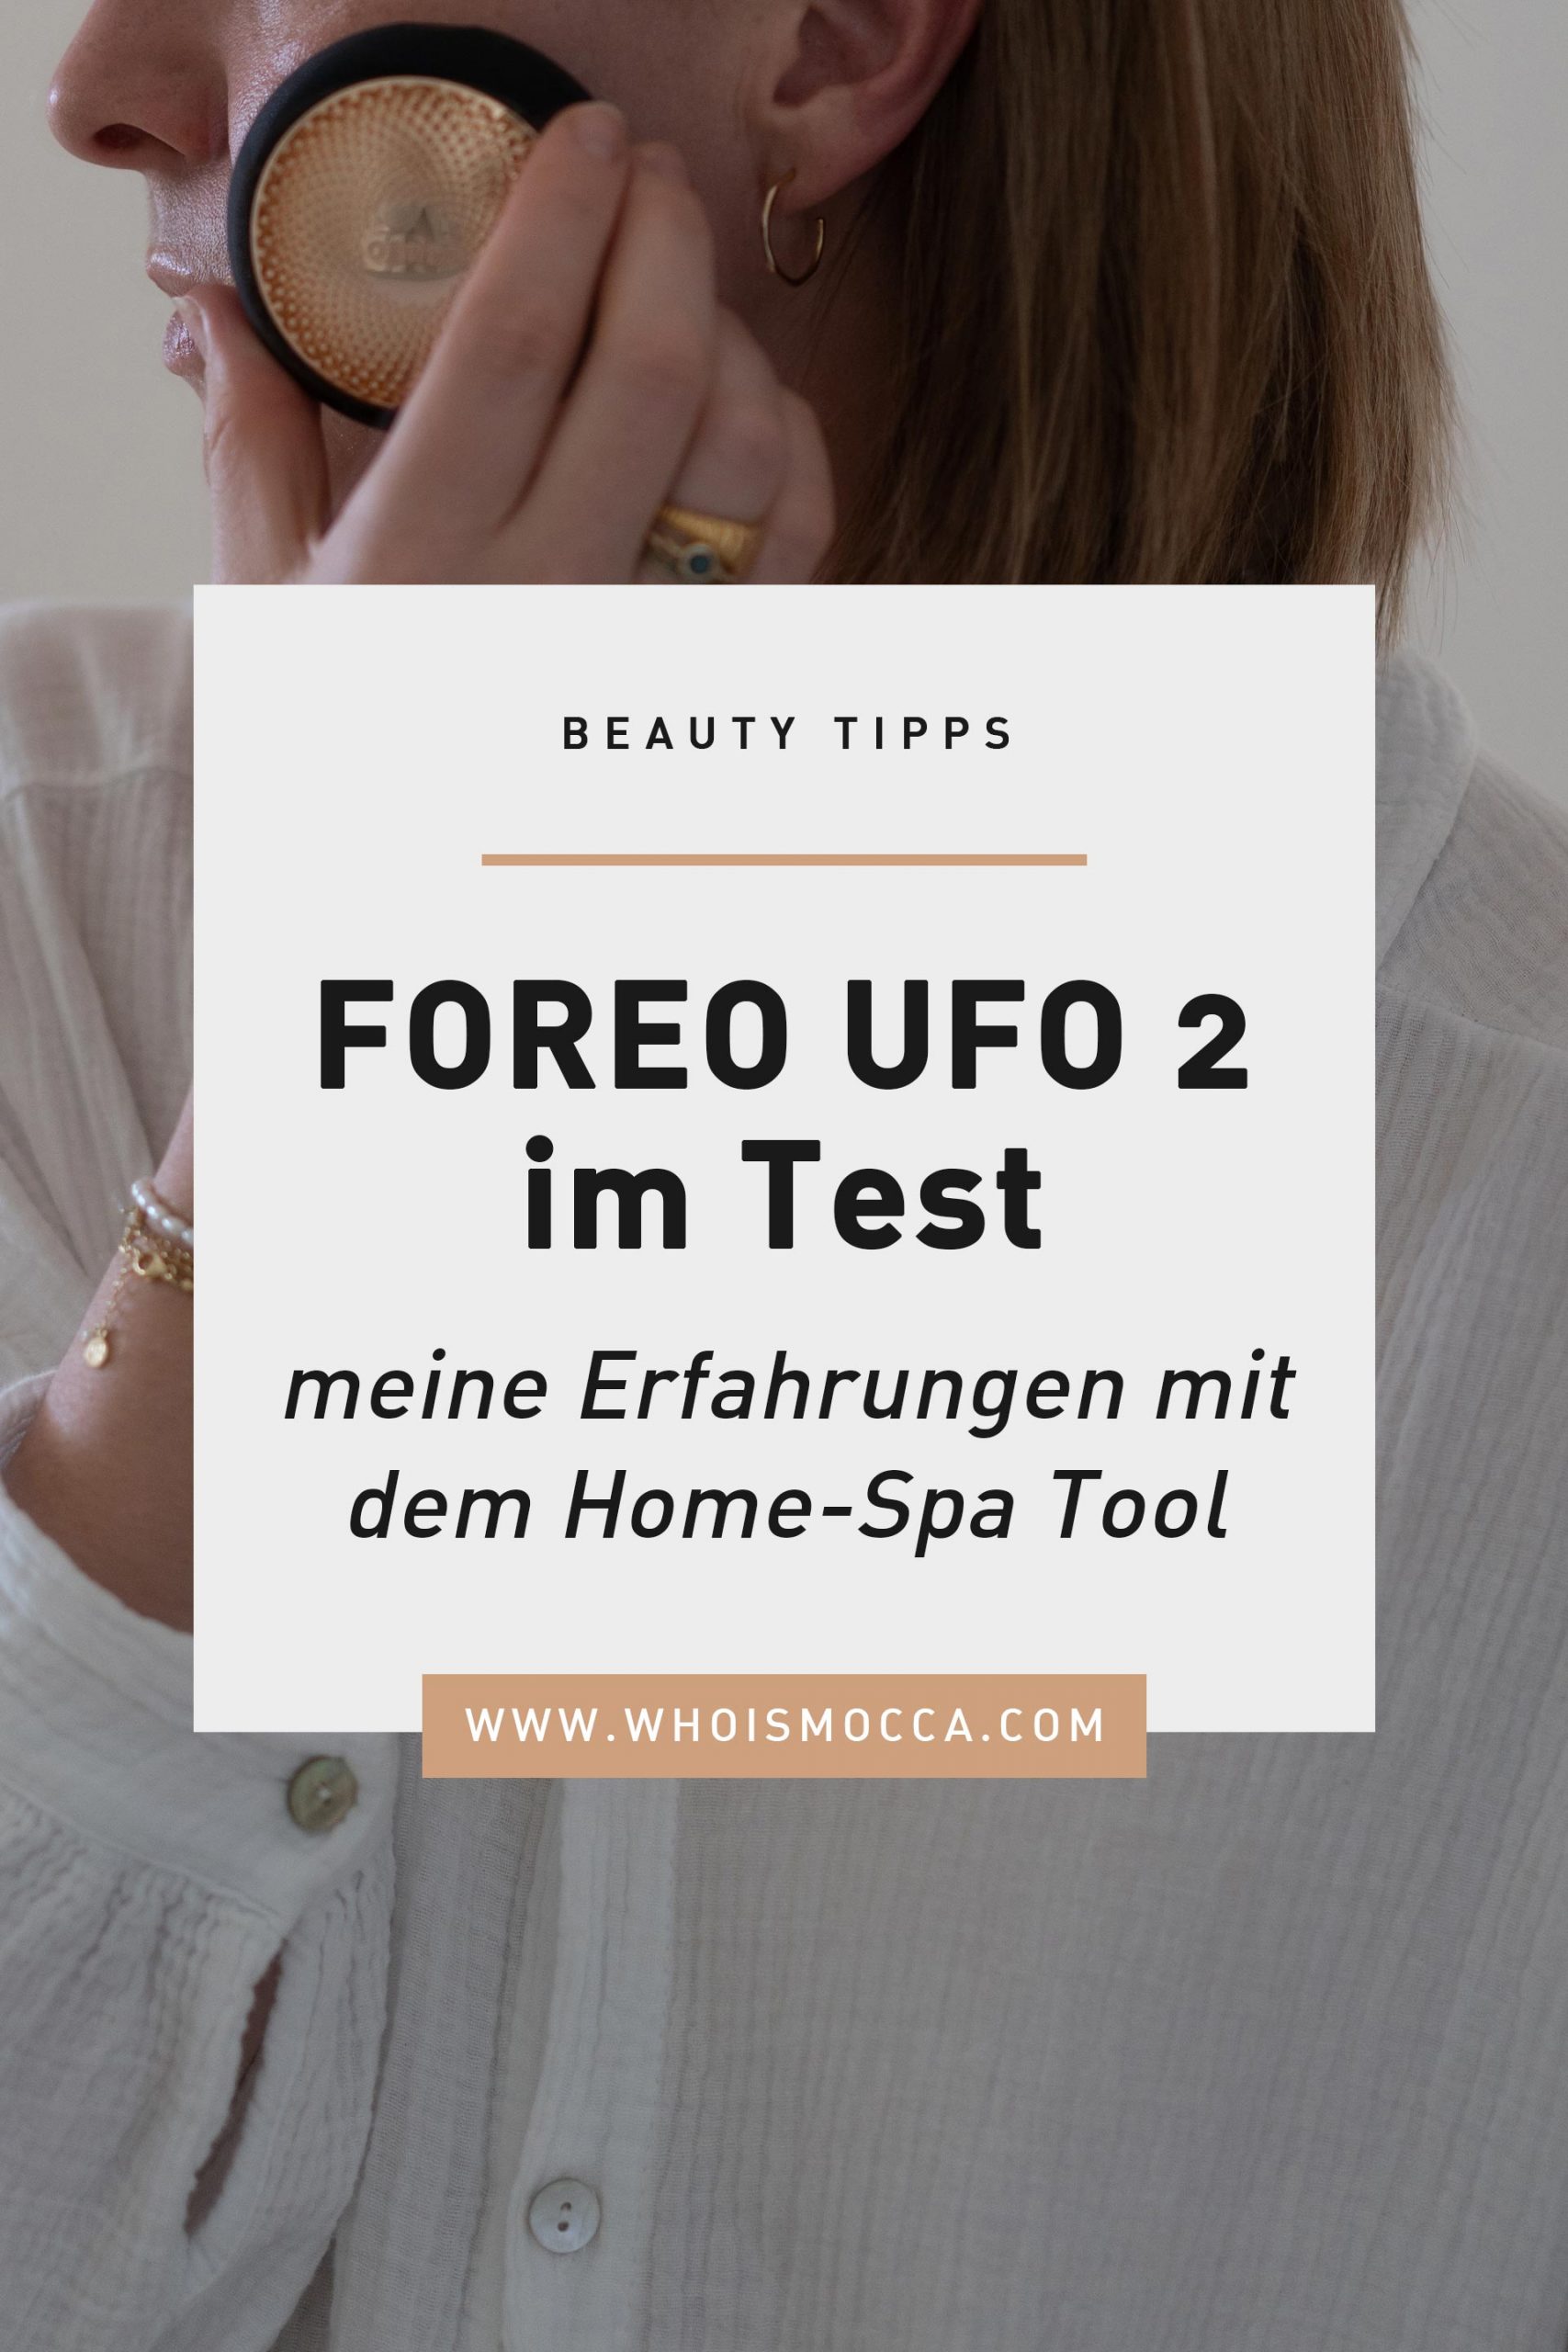 Anzeige. Meine FOREO UFO 2 Erfahrungen liest du jetzt am Beautyblog. Für gepflegte Haut mit Glow und eine tolle Anti-Aging Hautpflegeroutine. www.whoismocca.com